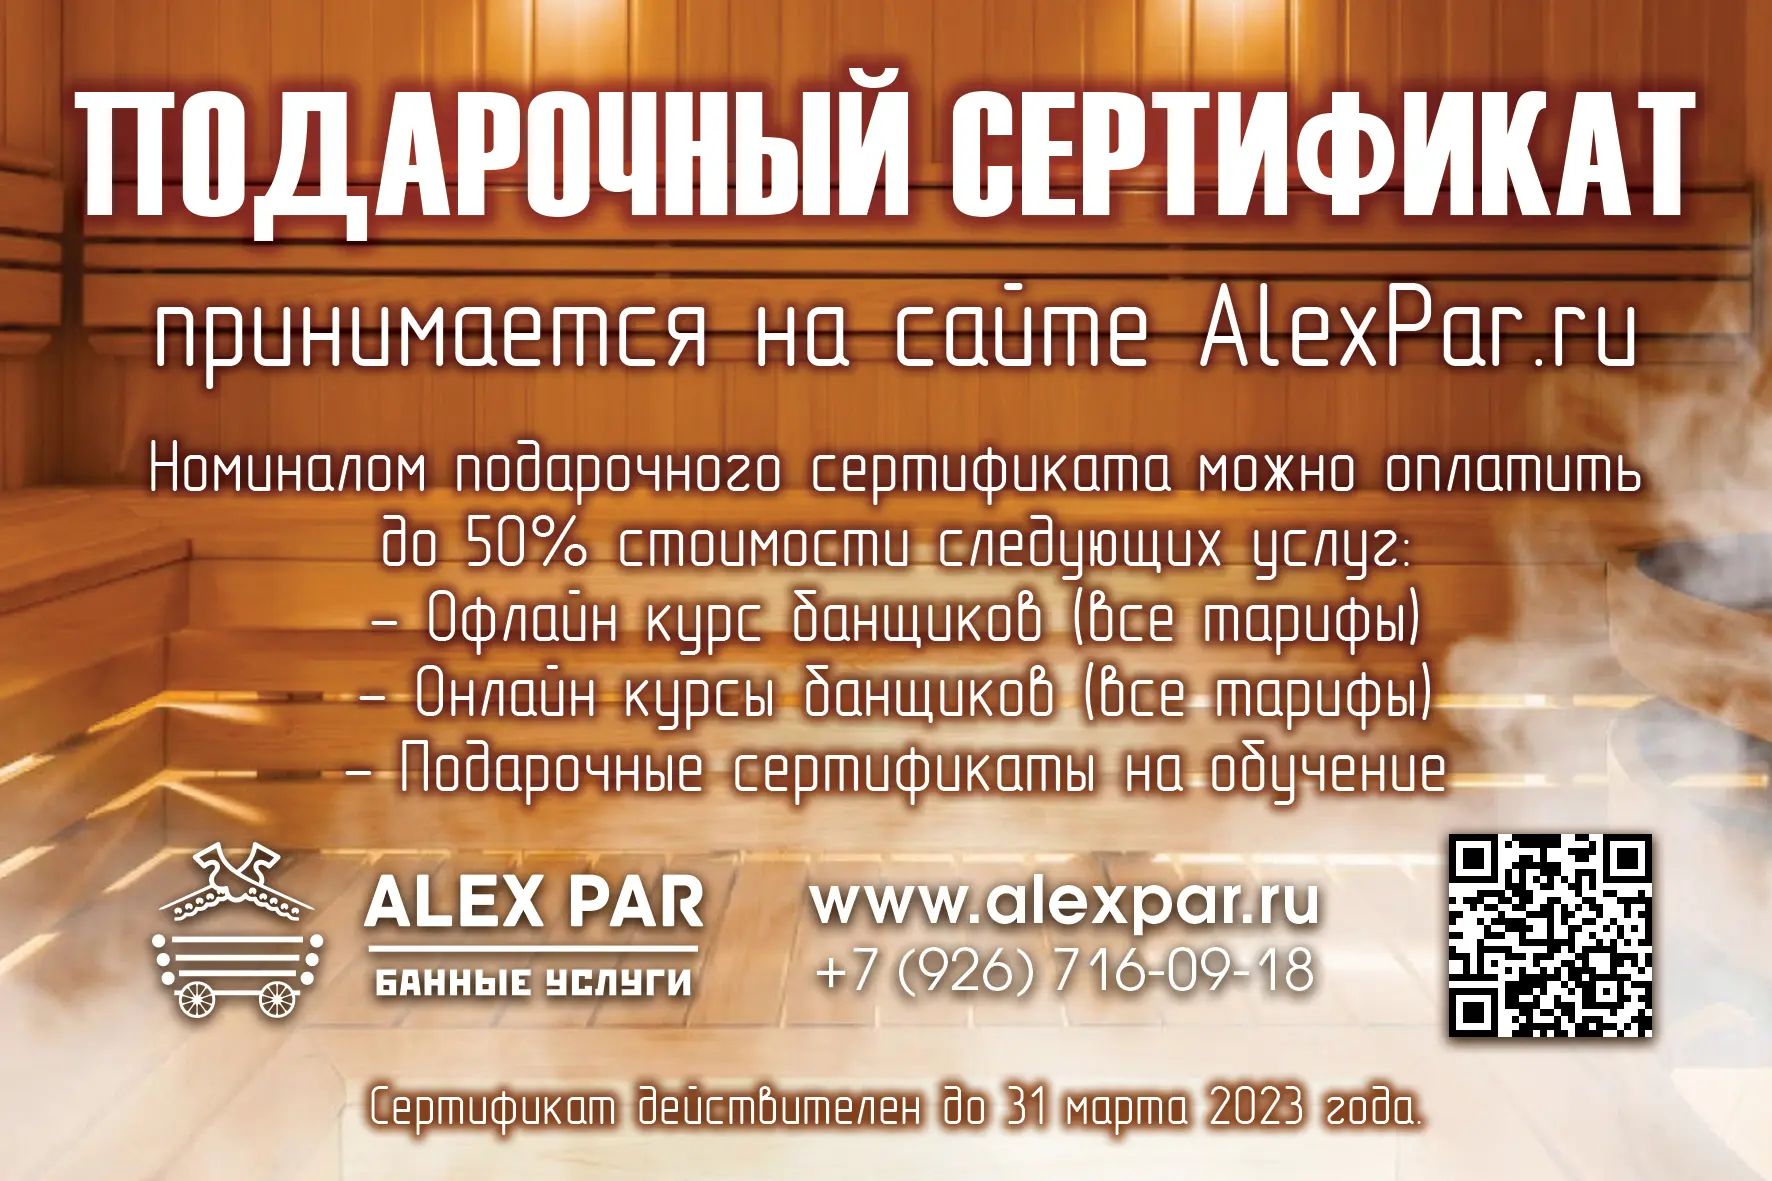 Подарочный сертификат AlexPar.ru 3 000 руб.. Фото N2